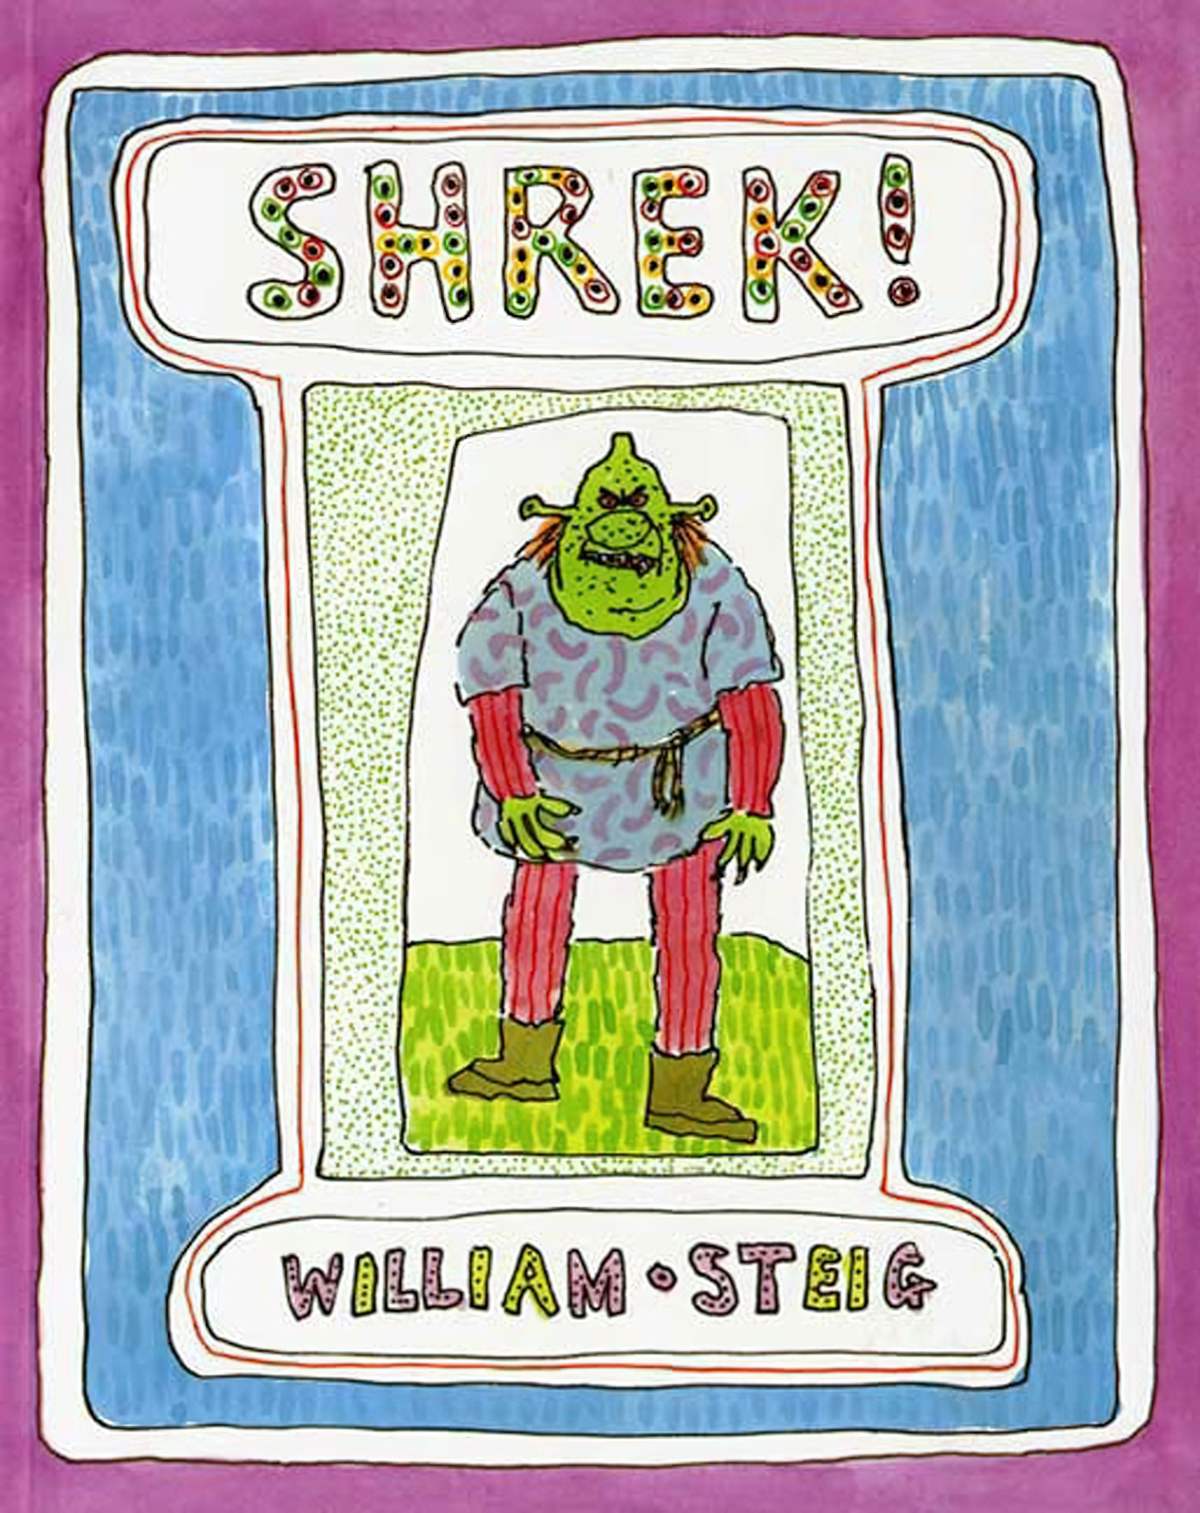 Shrek! Picture Book by William Steig Analysis